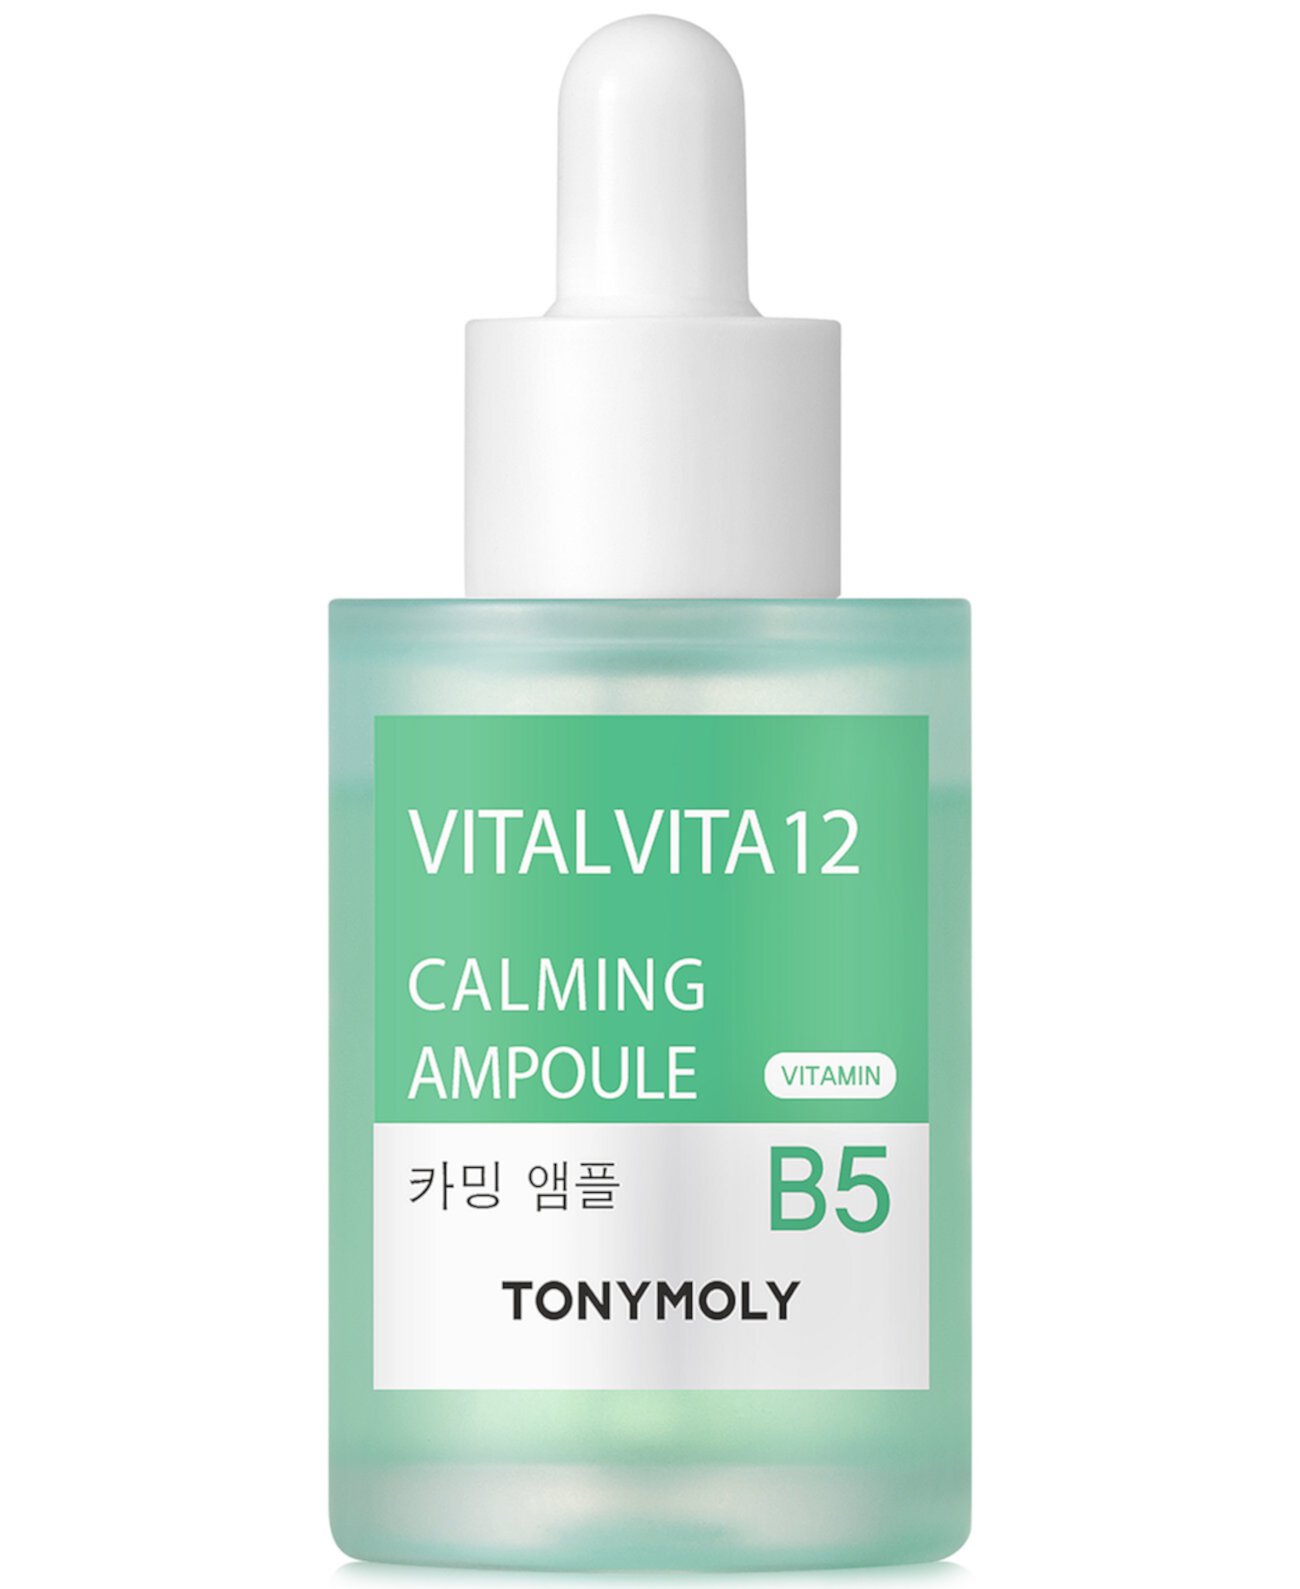 Vital Vita 12 Витамин B5 Успокаивающая ампула, 1 унция. TONYMOLY